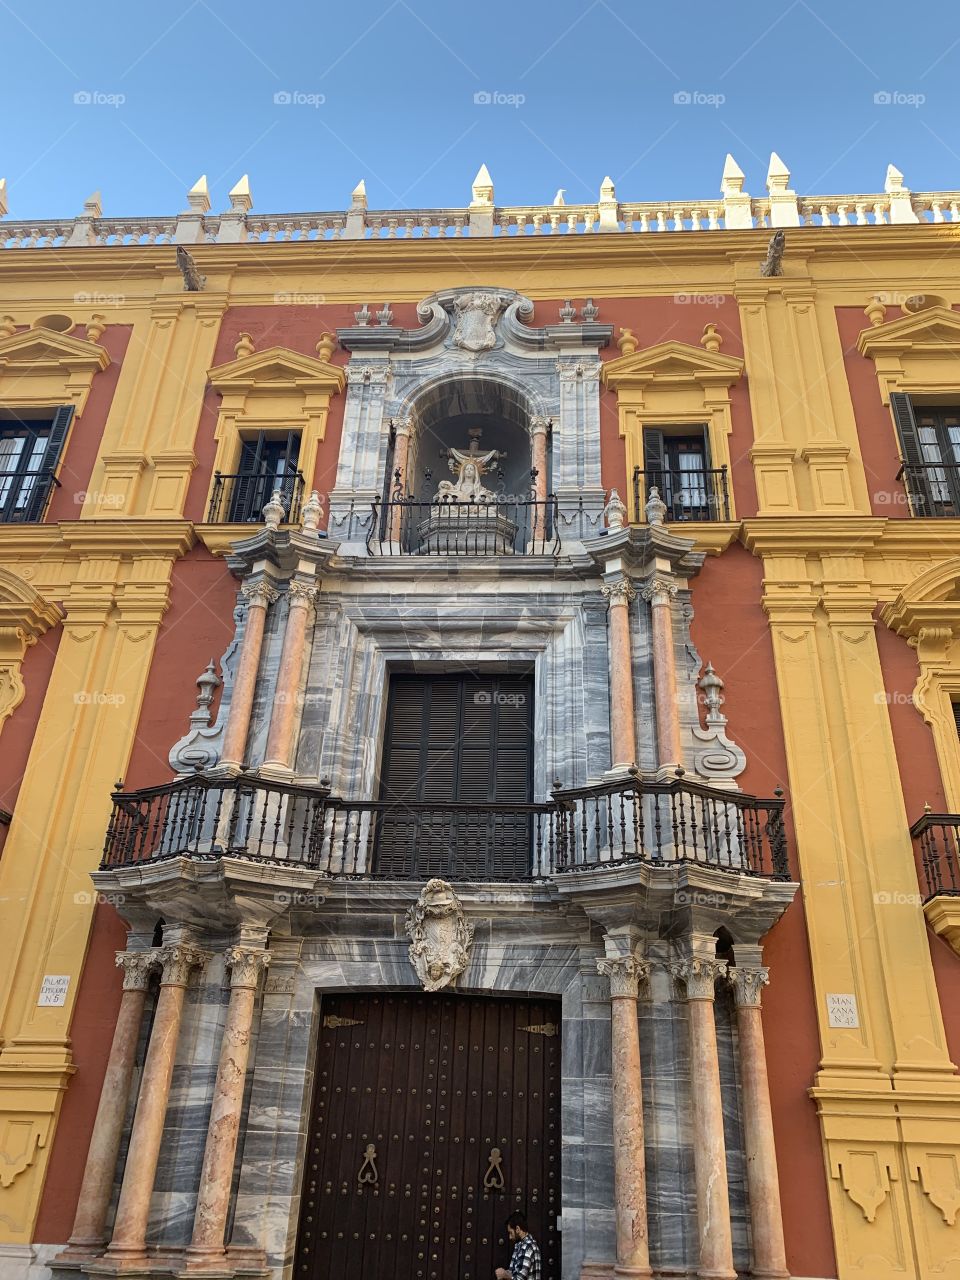 Building, Granada 